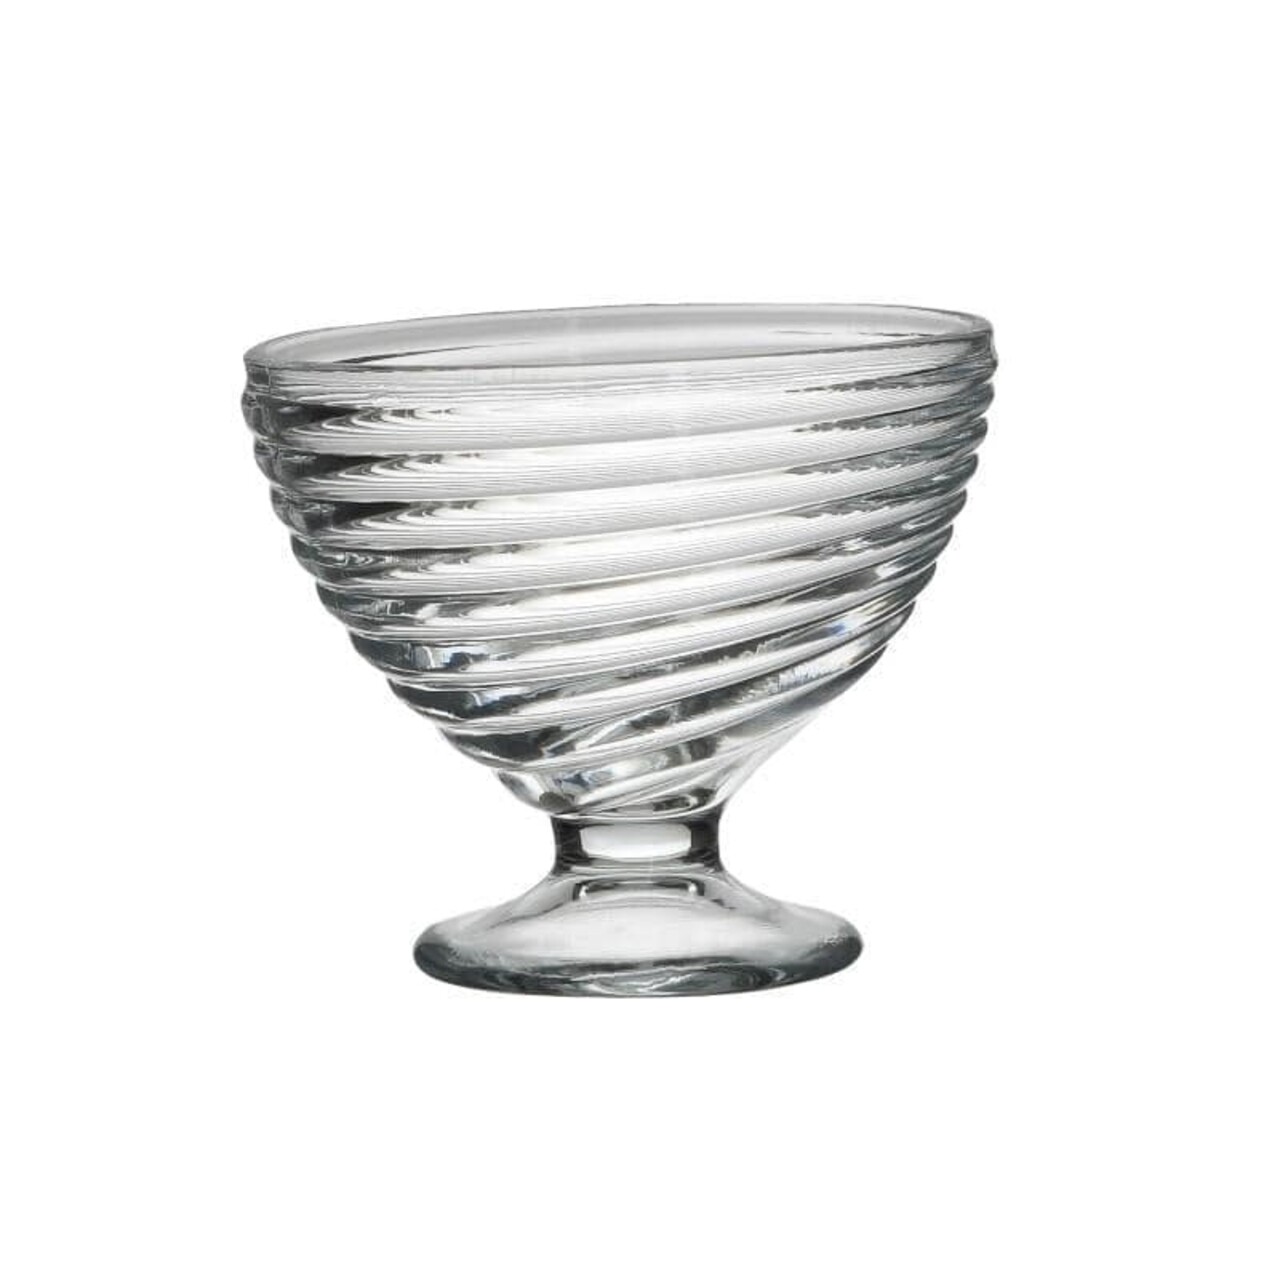 3 db átlátszó desszertes pohár készlet, InArt, Ø10x8,5 cm, üveg